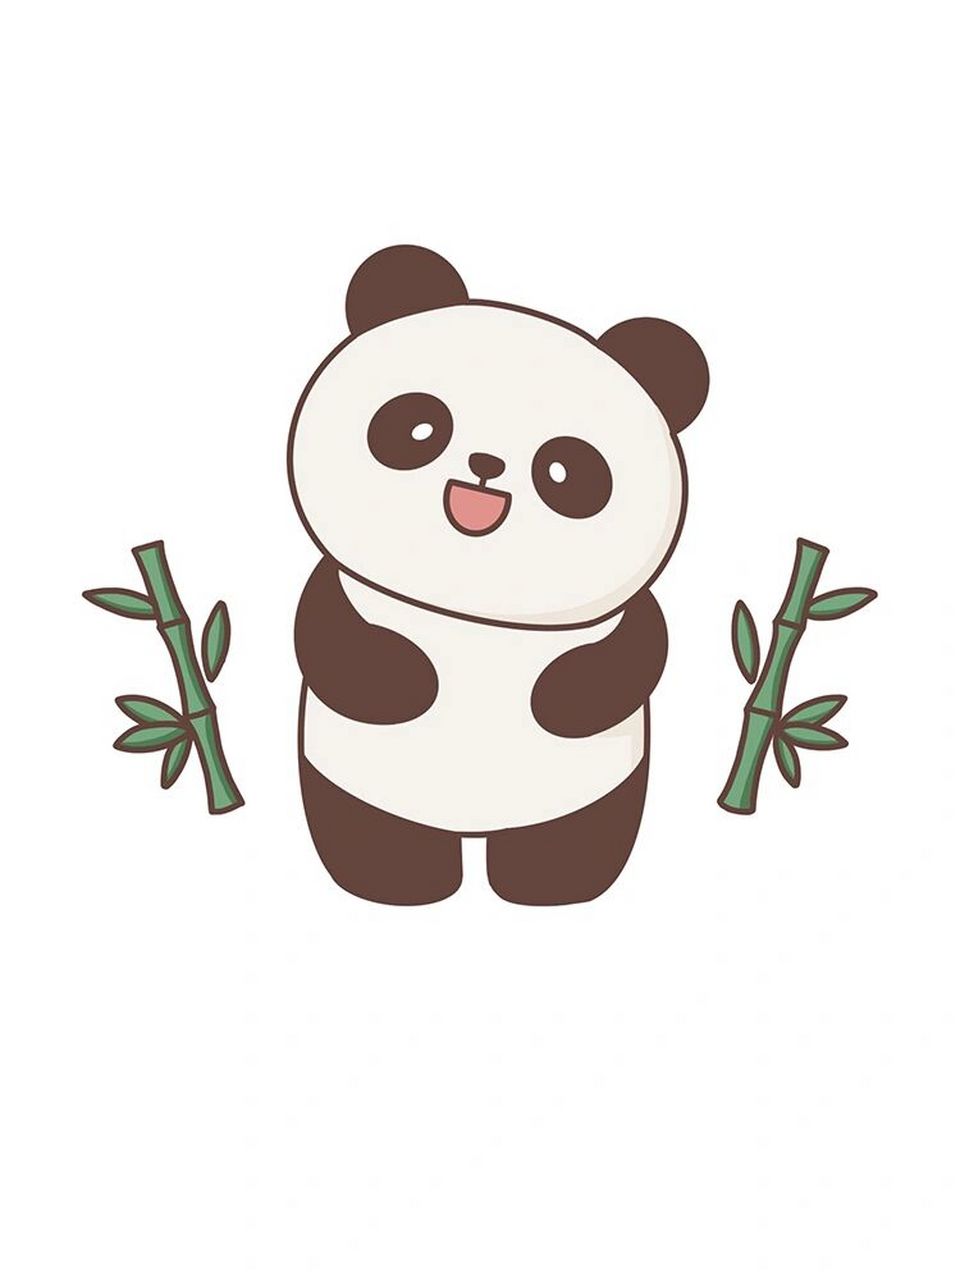 大熊猫的简笔画最萌图片